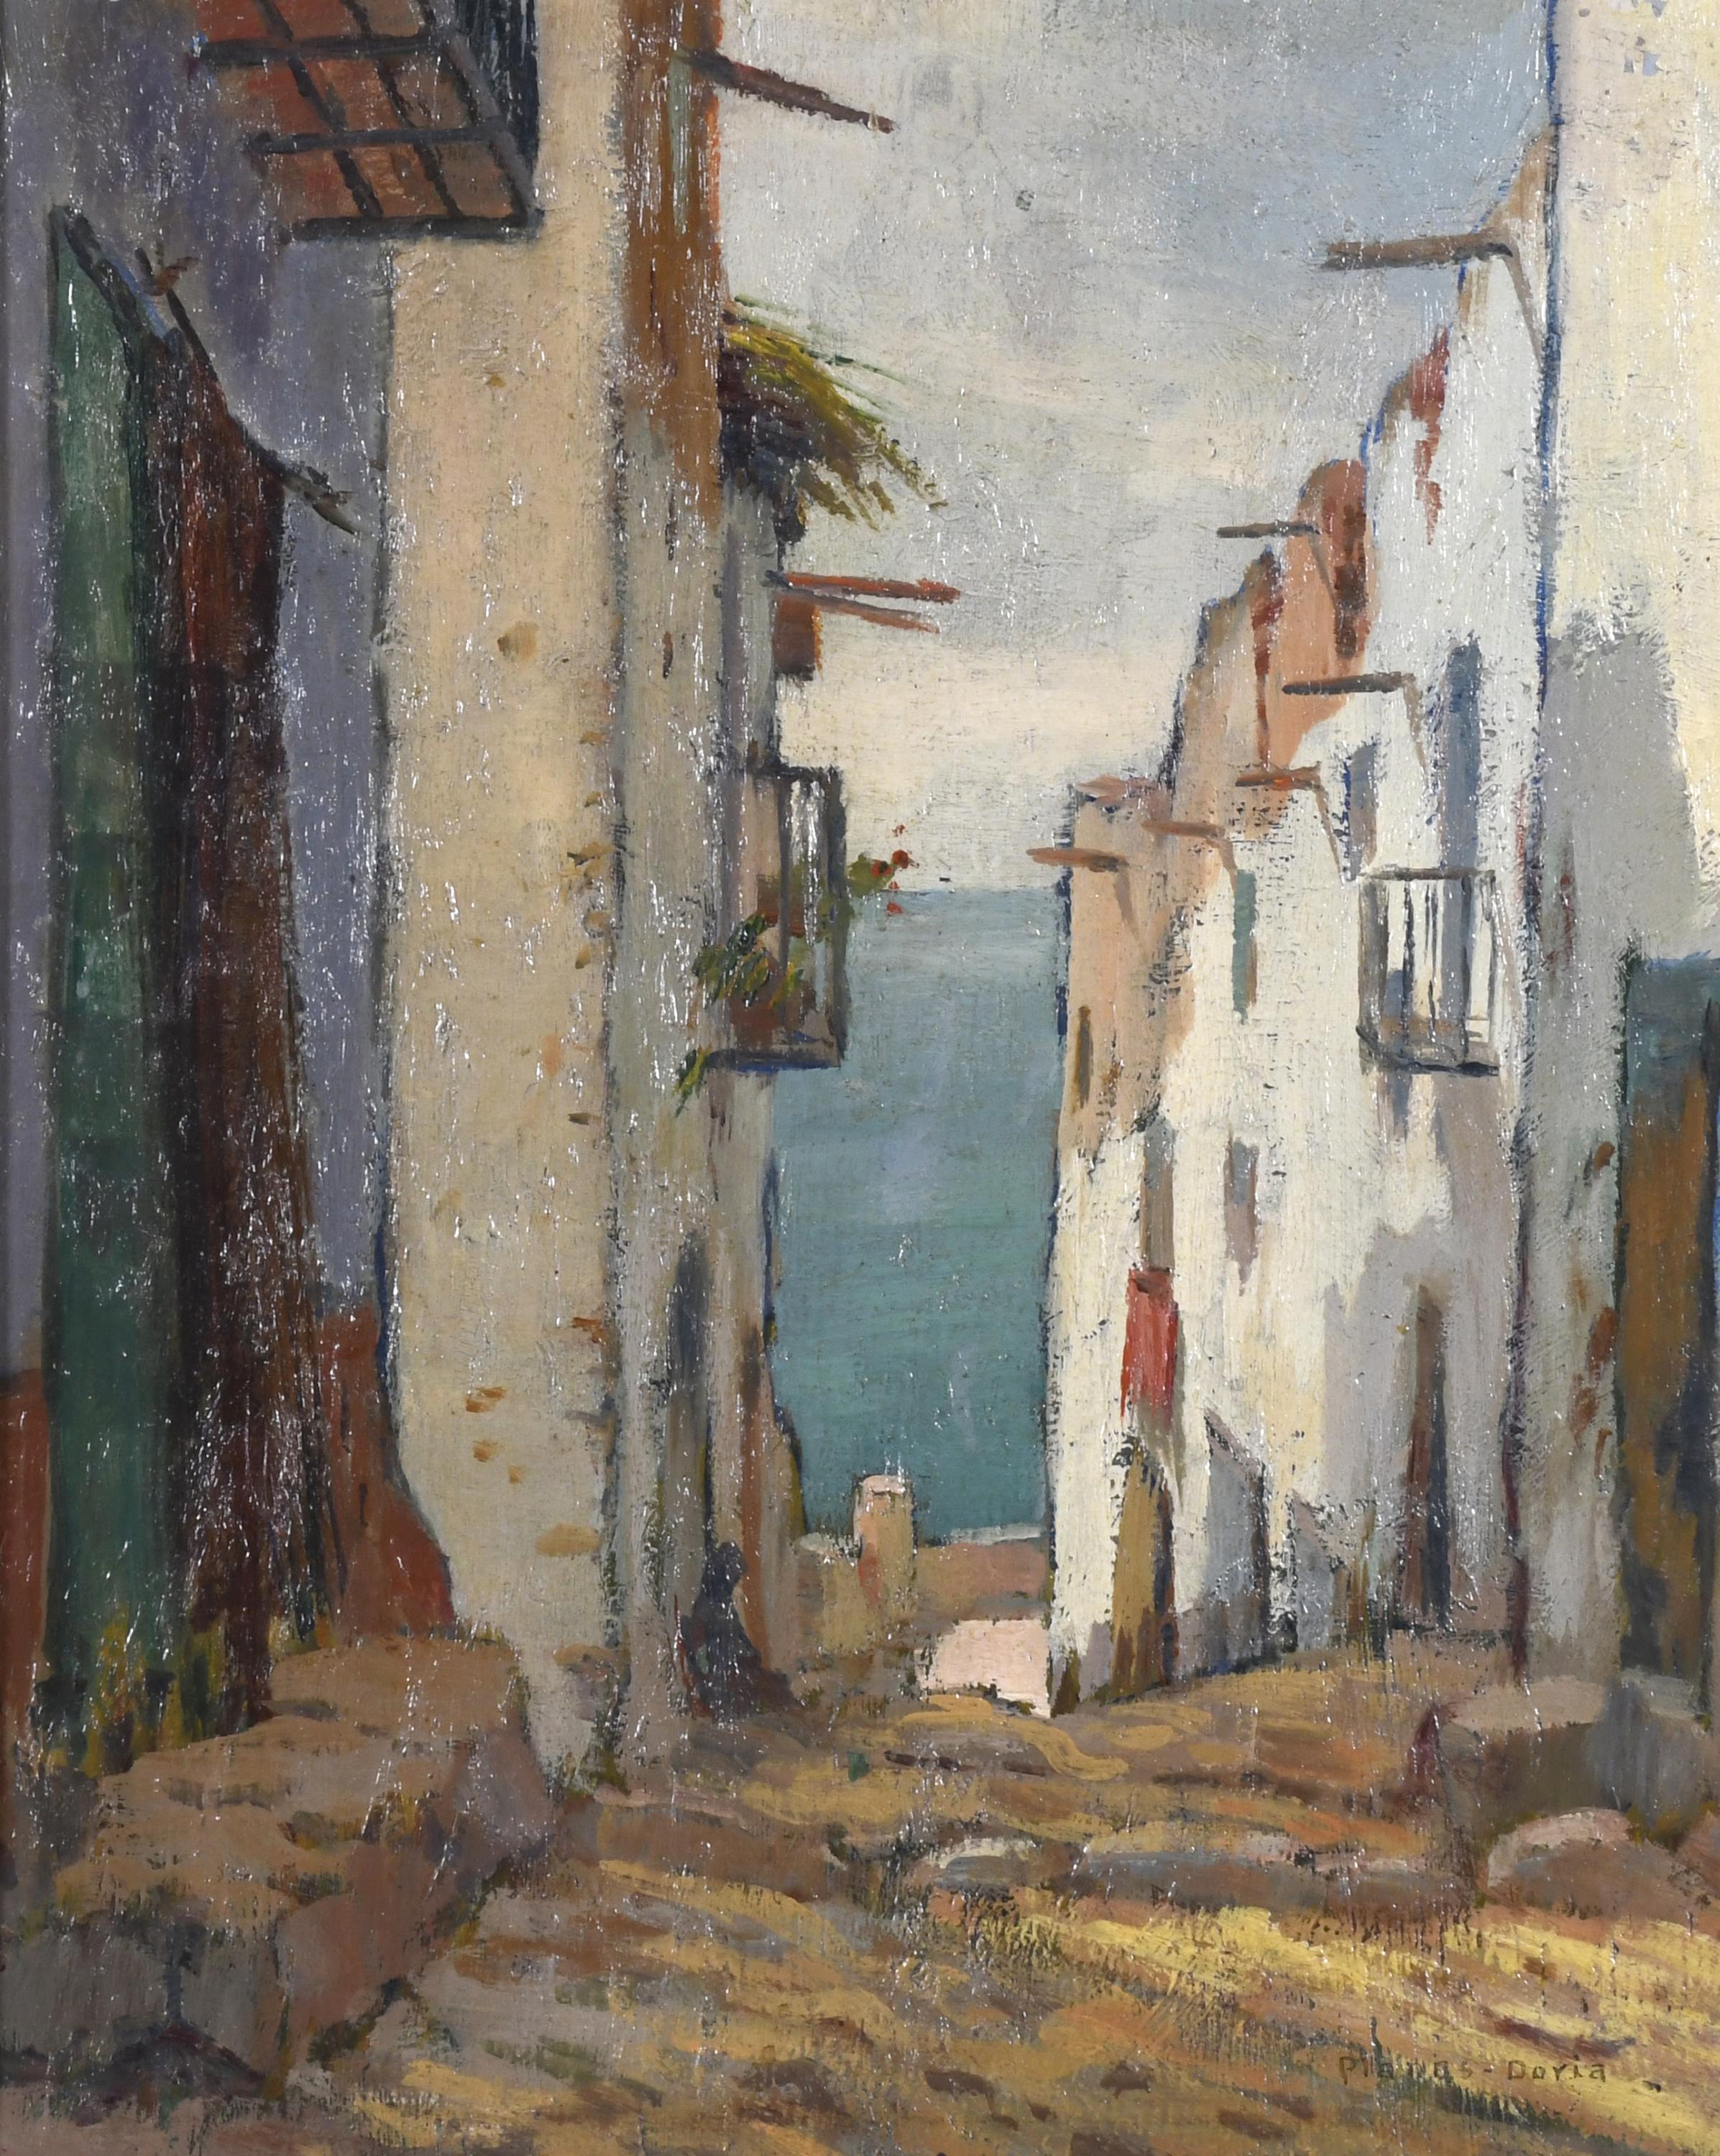  FRANCISCO PLANAS DORIA (1879-1955).  "BLANES".